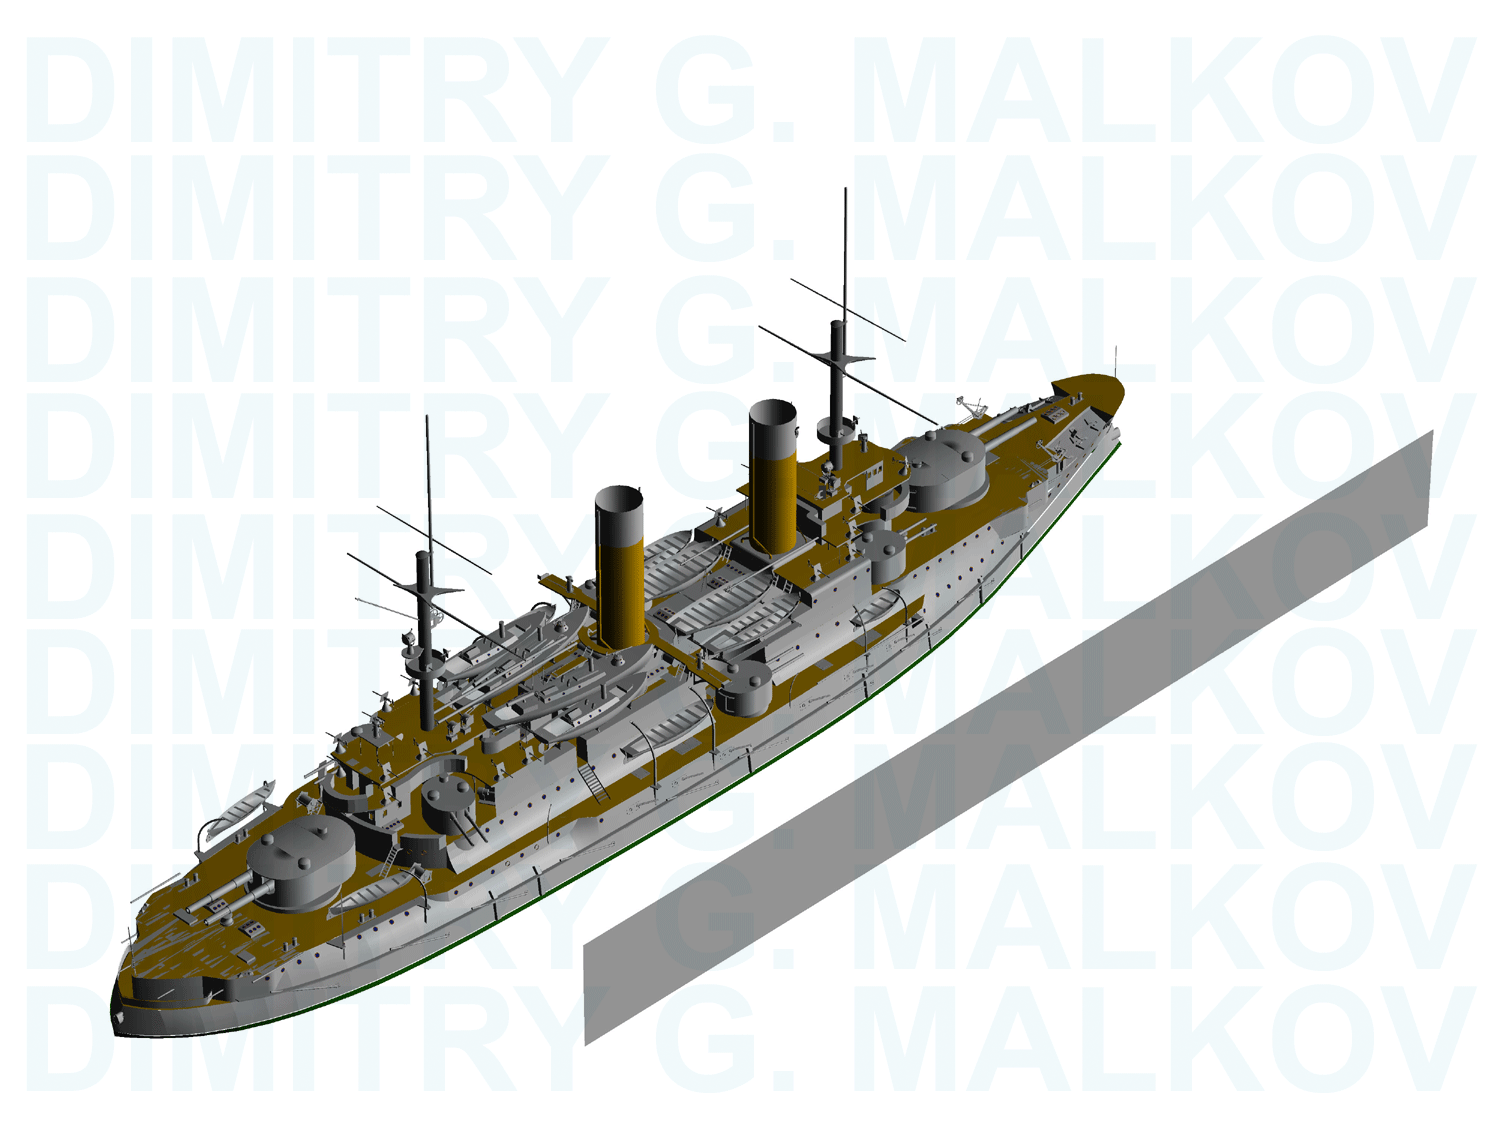 ship_rs-1malkov.gif